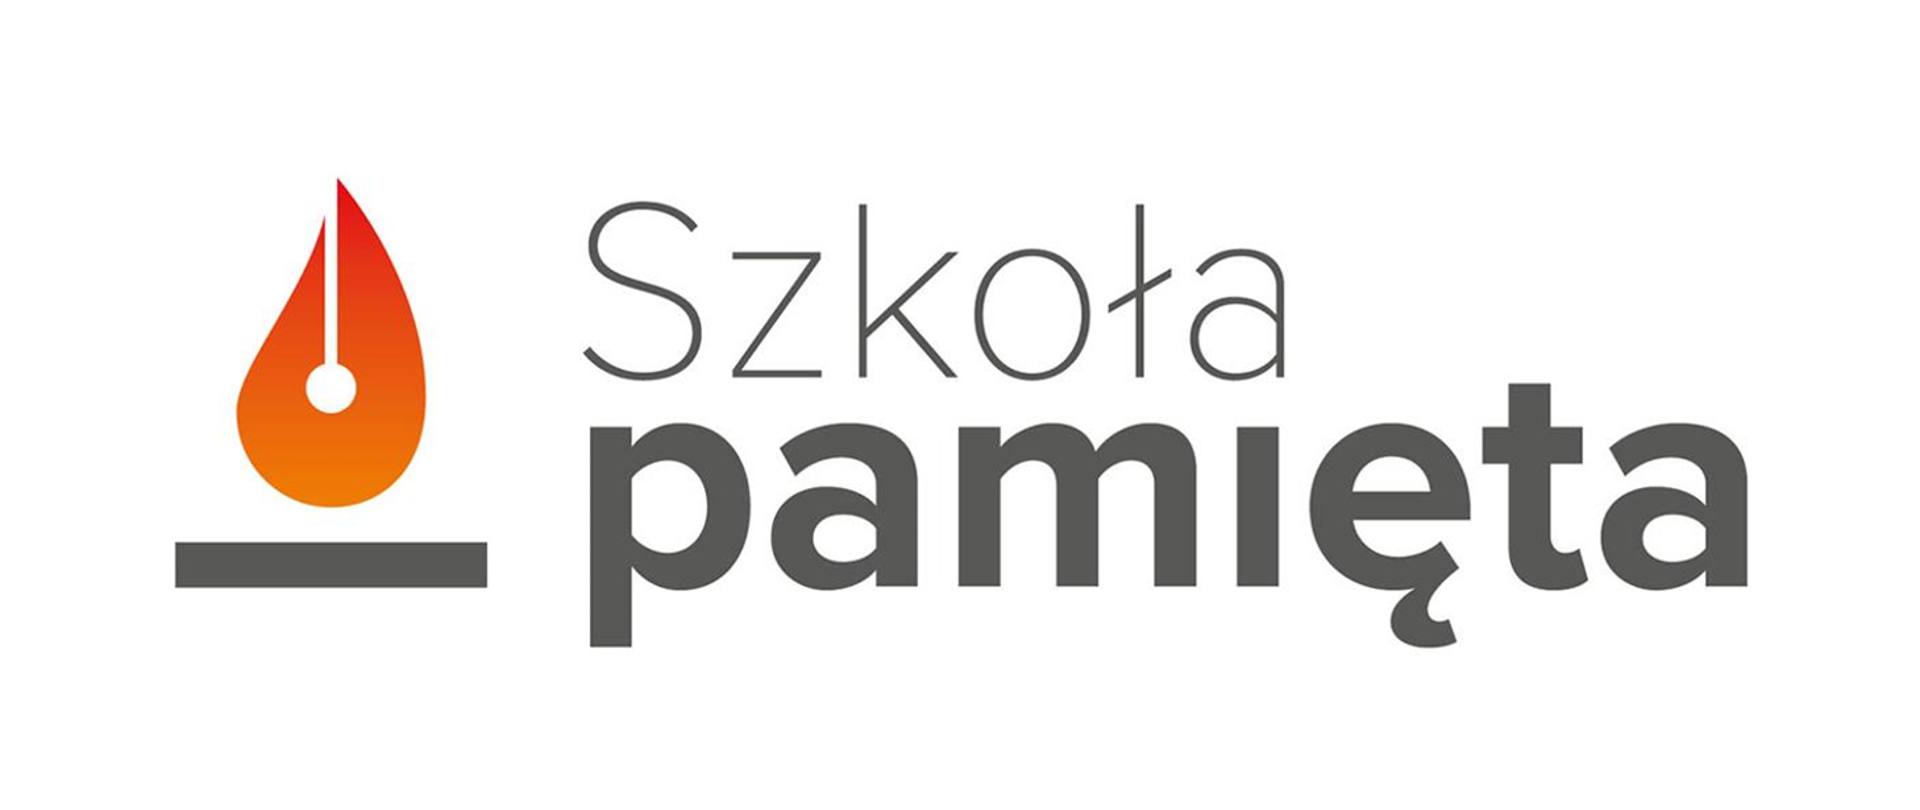 Grafika przedstawiająca logo składające się z graficznego przedstawienia płomyka z lewej strony oraz napisu Szkoła pamięta z prawej strony.